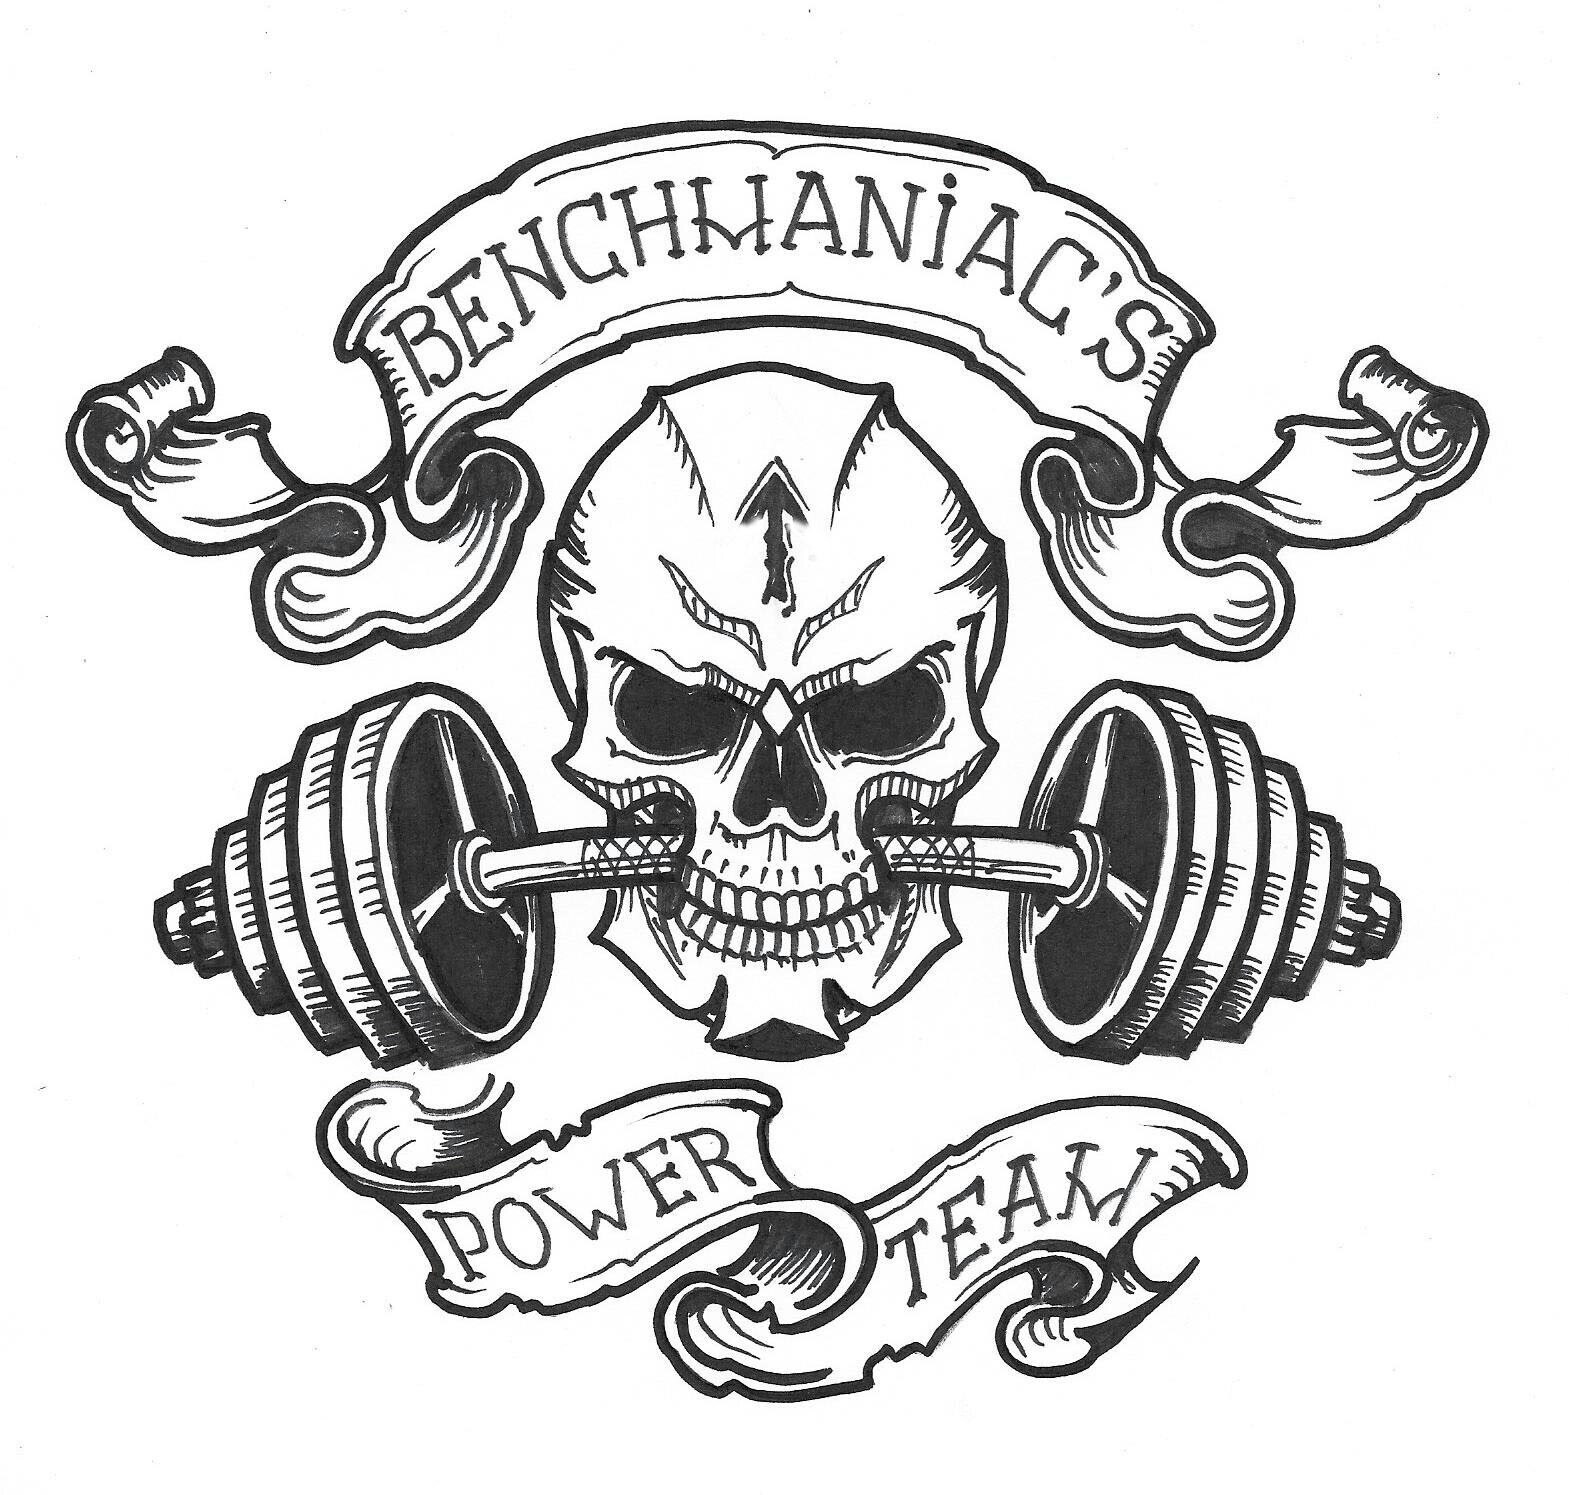 Benchmaniac&#039;s power team в Курске